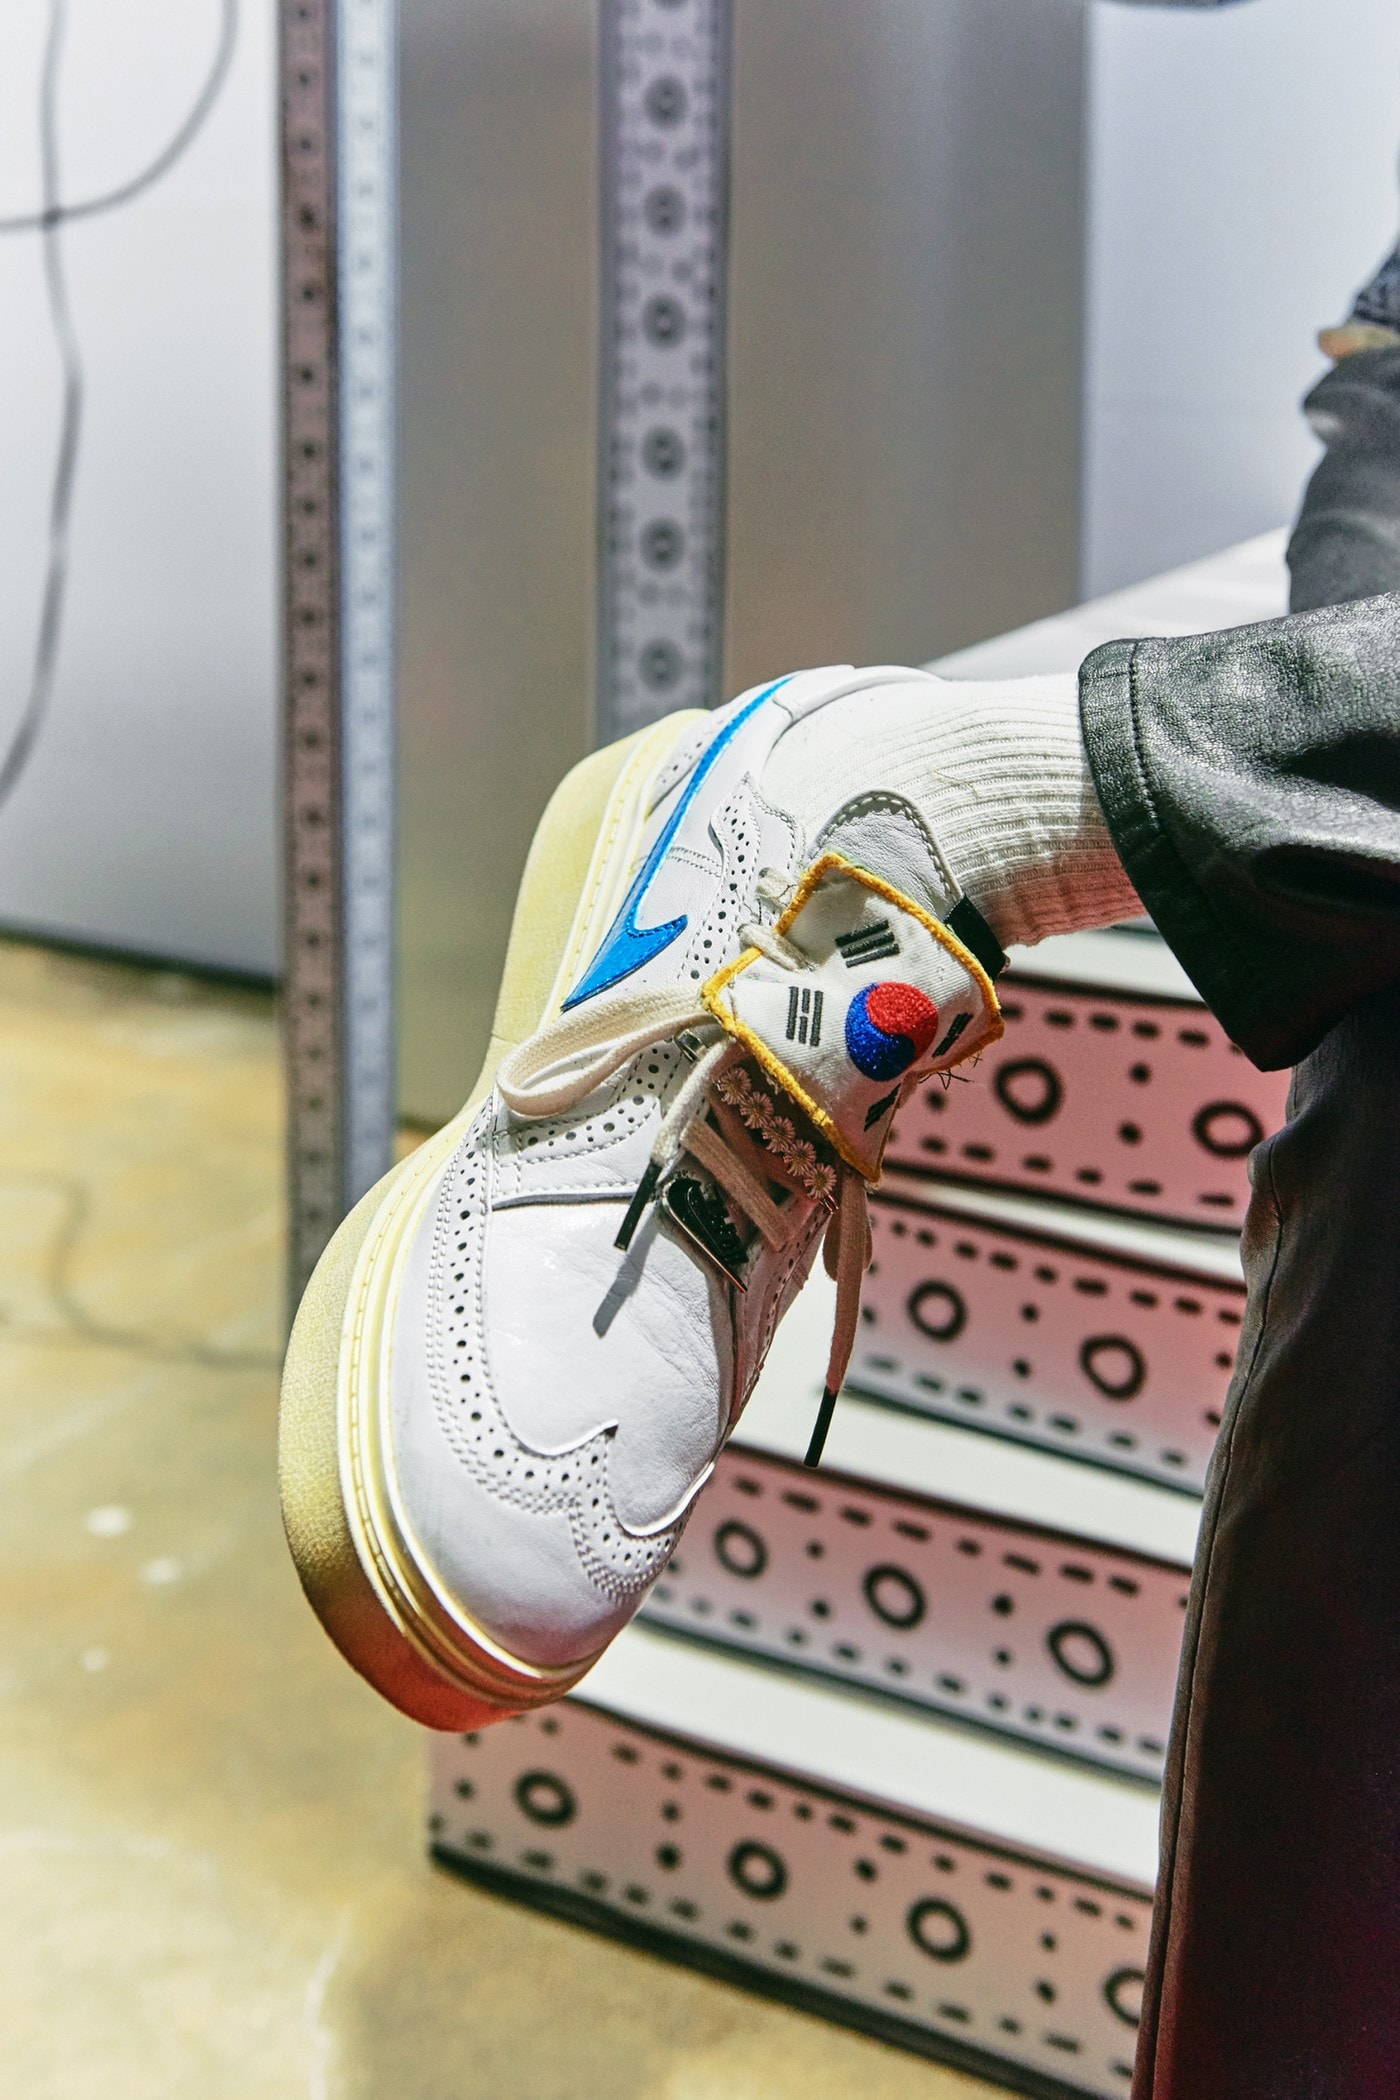 G-Dragon 親臨 PEACEMINUSONE x Nike Kwondo 1 最新聯名鞋款 Pop-Up 店舖